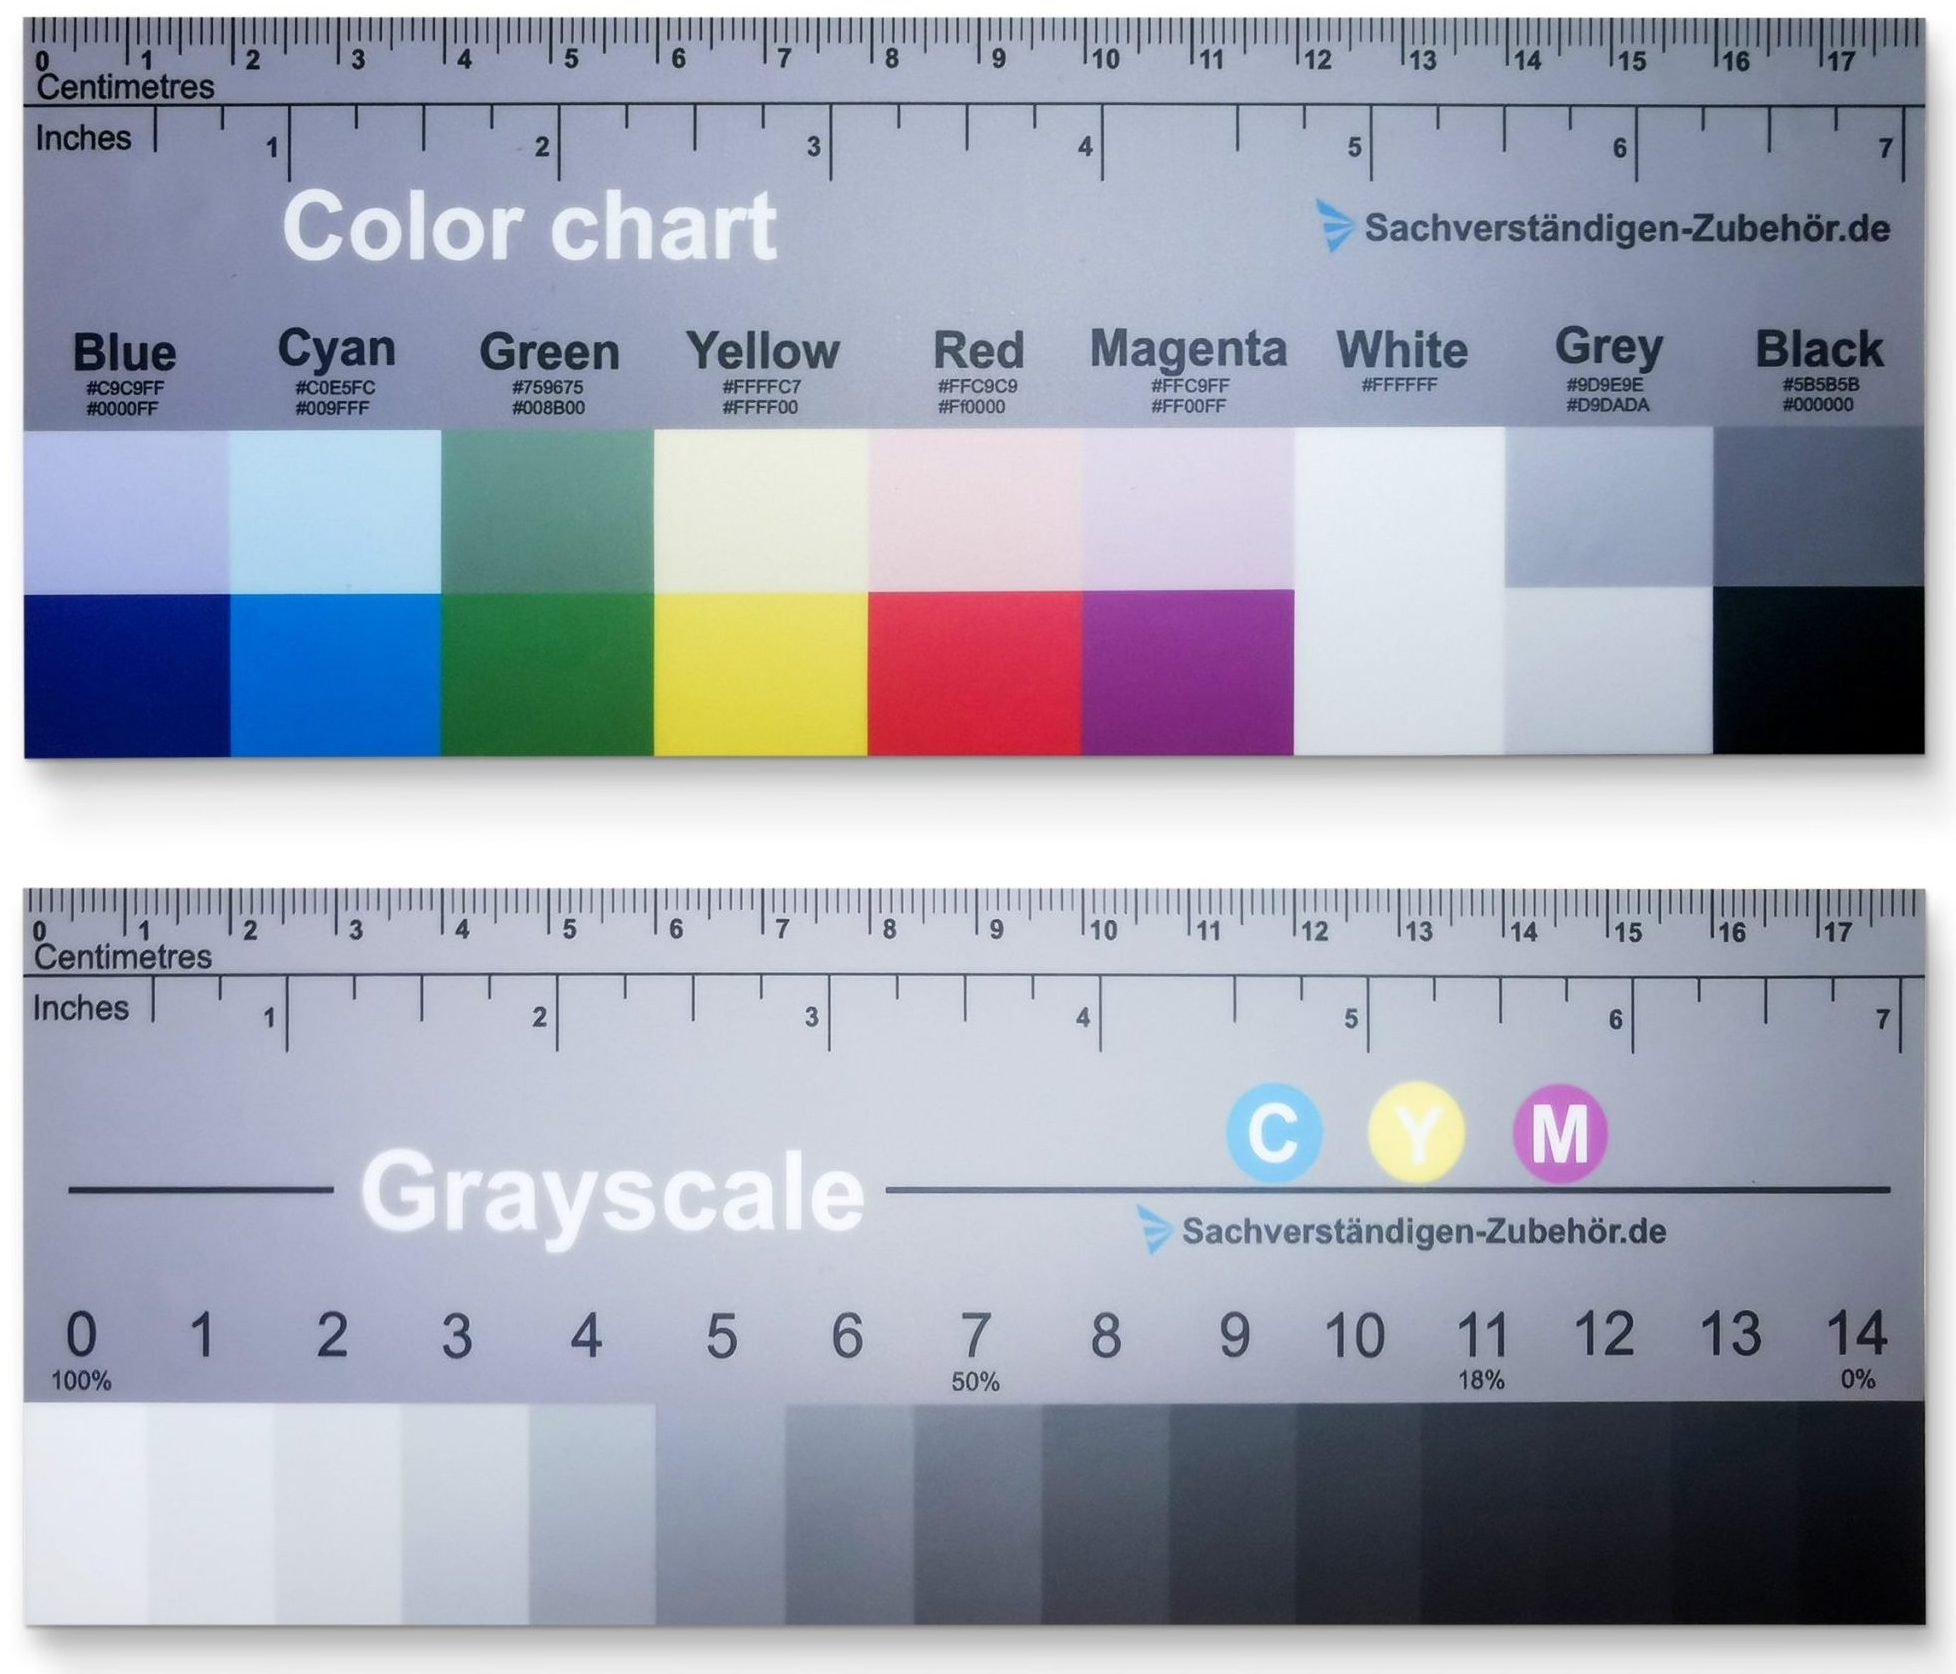 Unsere Farbkarte mit Grauskala ist das perfekte Werkzeug für eine präzise Farbkalibrierung. Mit dieser Karte können Sie sicherstellen, dass Ihre Farben genau und konsistent sind, egal ob Sie fotografieren, drucken oder am Computer arbeiten. Die Grauskala bietet eine neutrale Referenz, um den Weißabgleich und die Belichtung zu optimieren. Mit hochwertigen Farbmustern und einer robusten Konstruktion ist diese Farbkarte langlebig und zuverlässig.